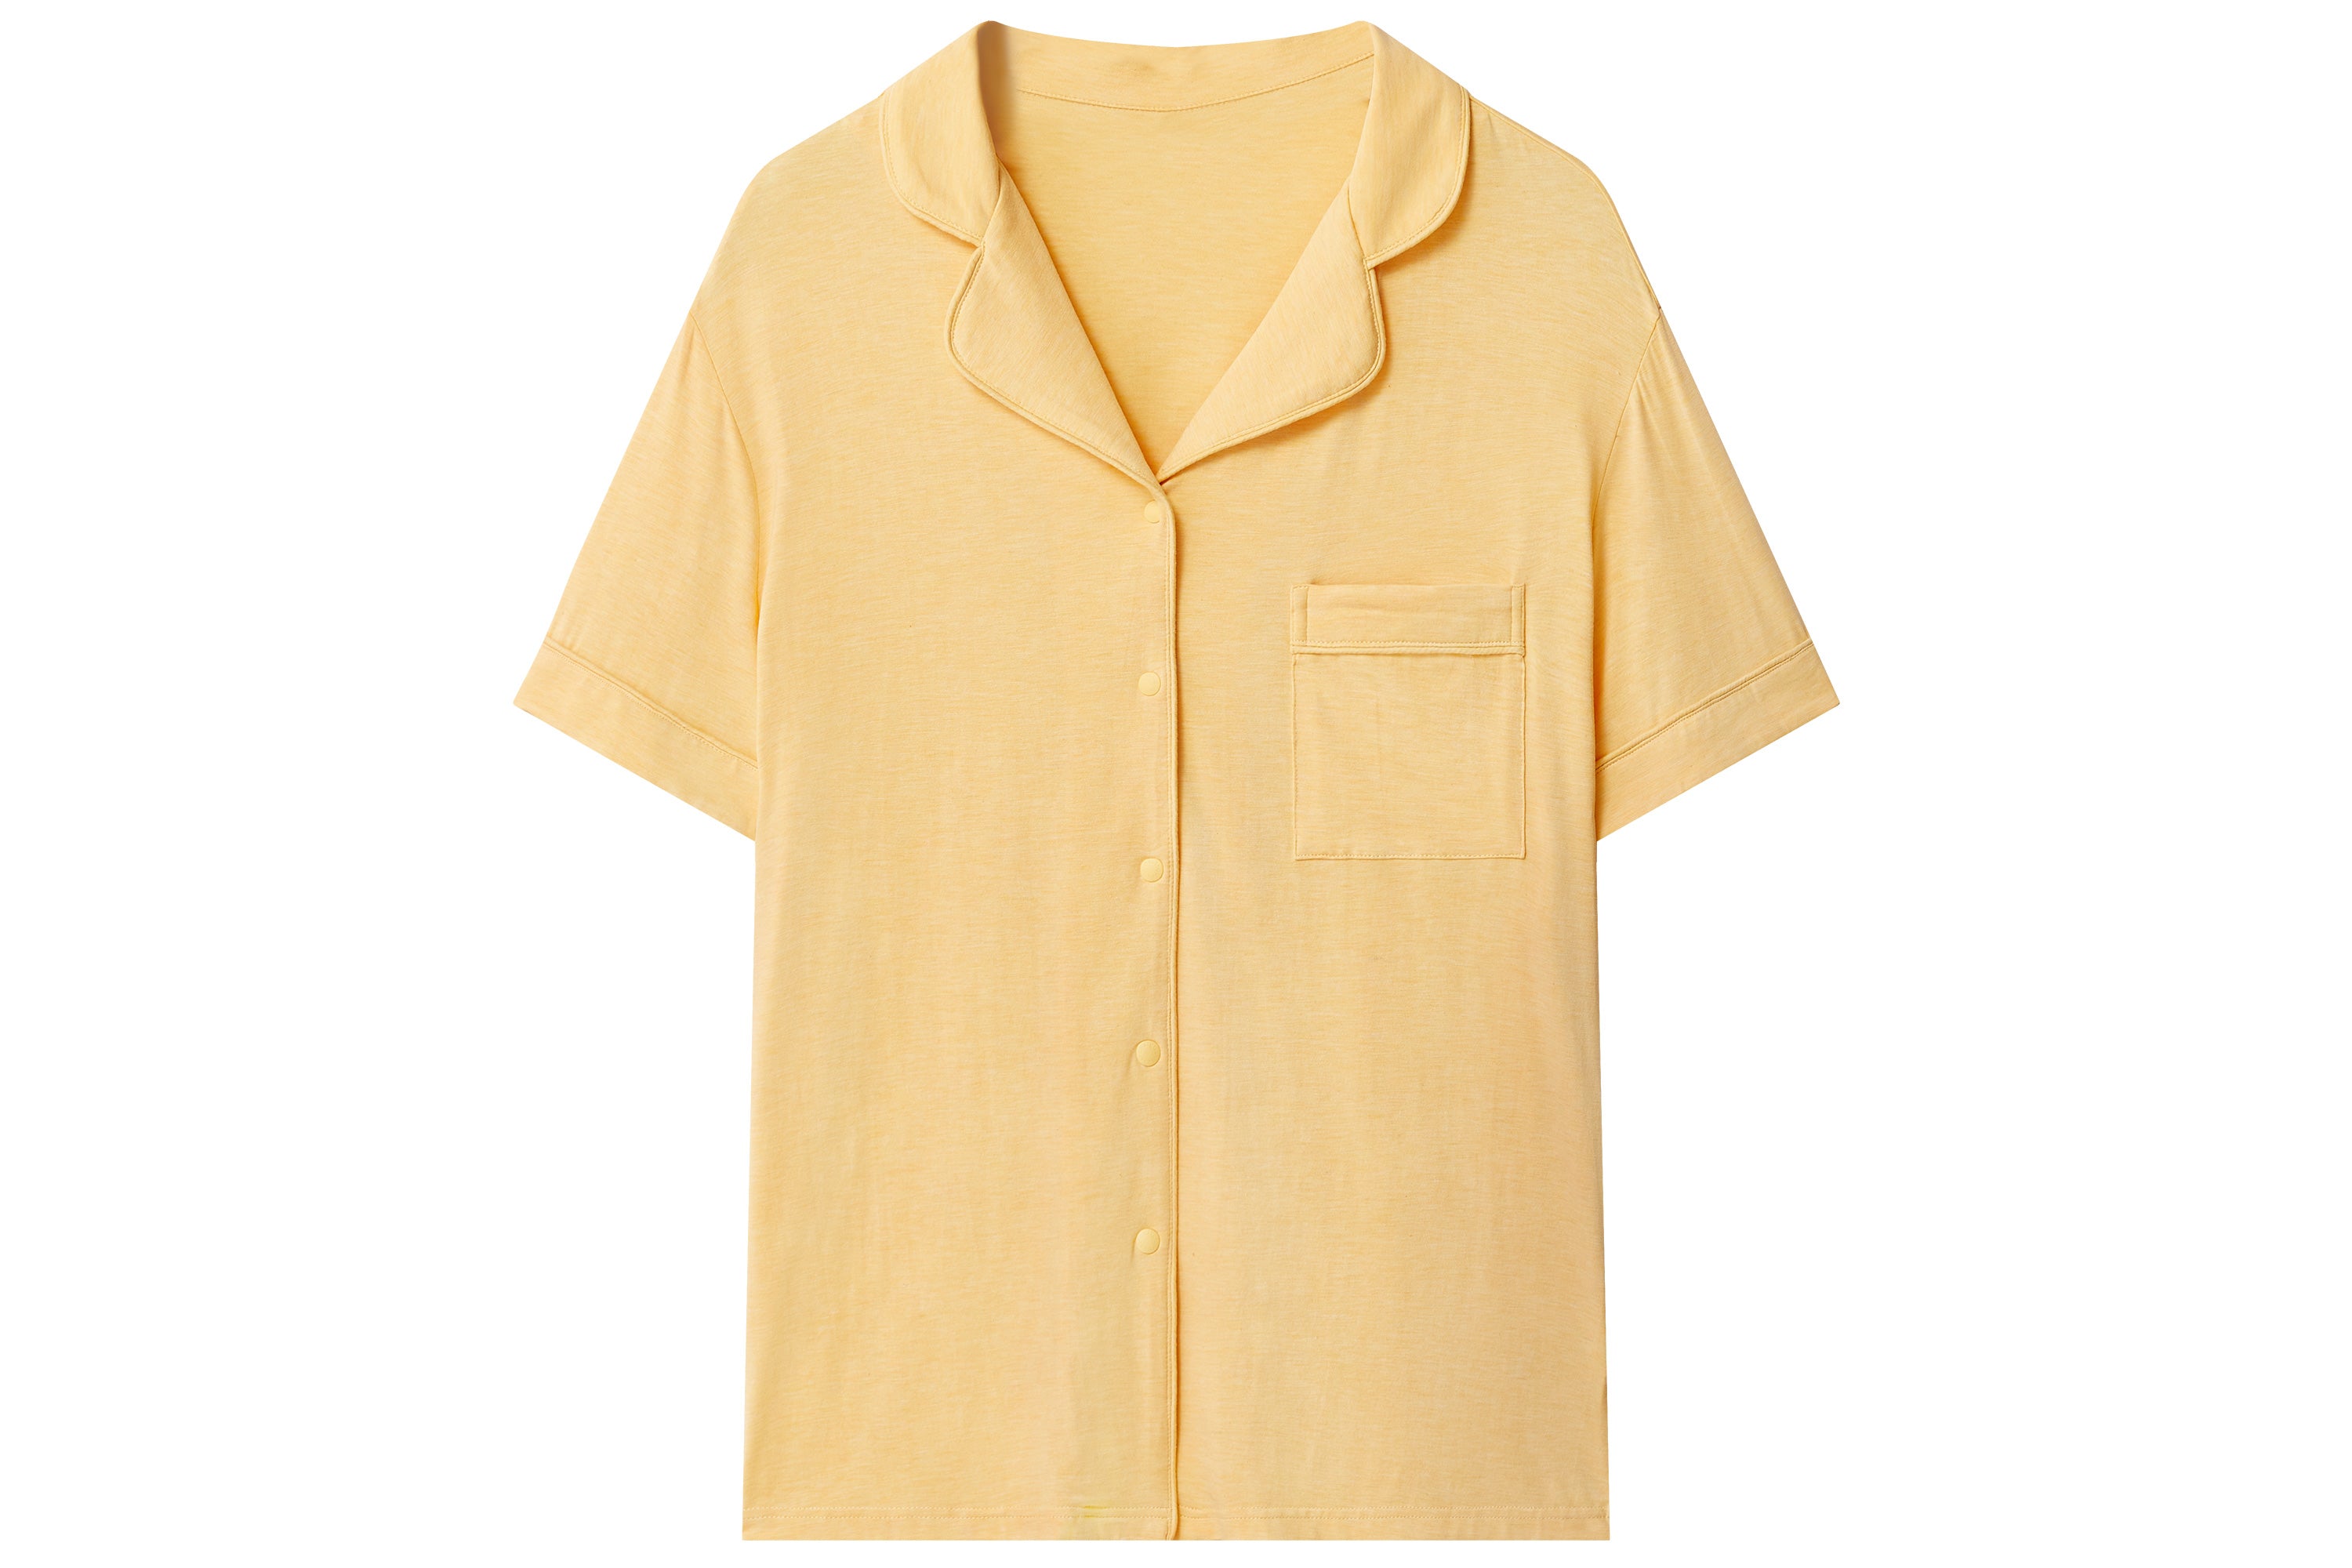 Women's Bamboo Jersey Short Sleeve Button-Up Shirt - Pantone Sunset Gold